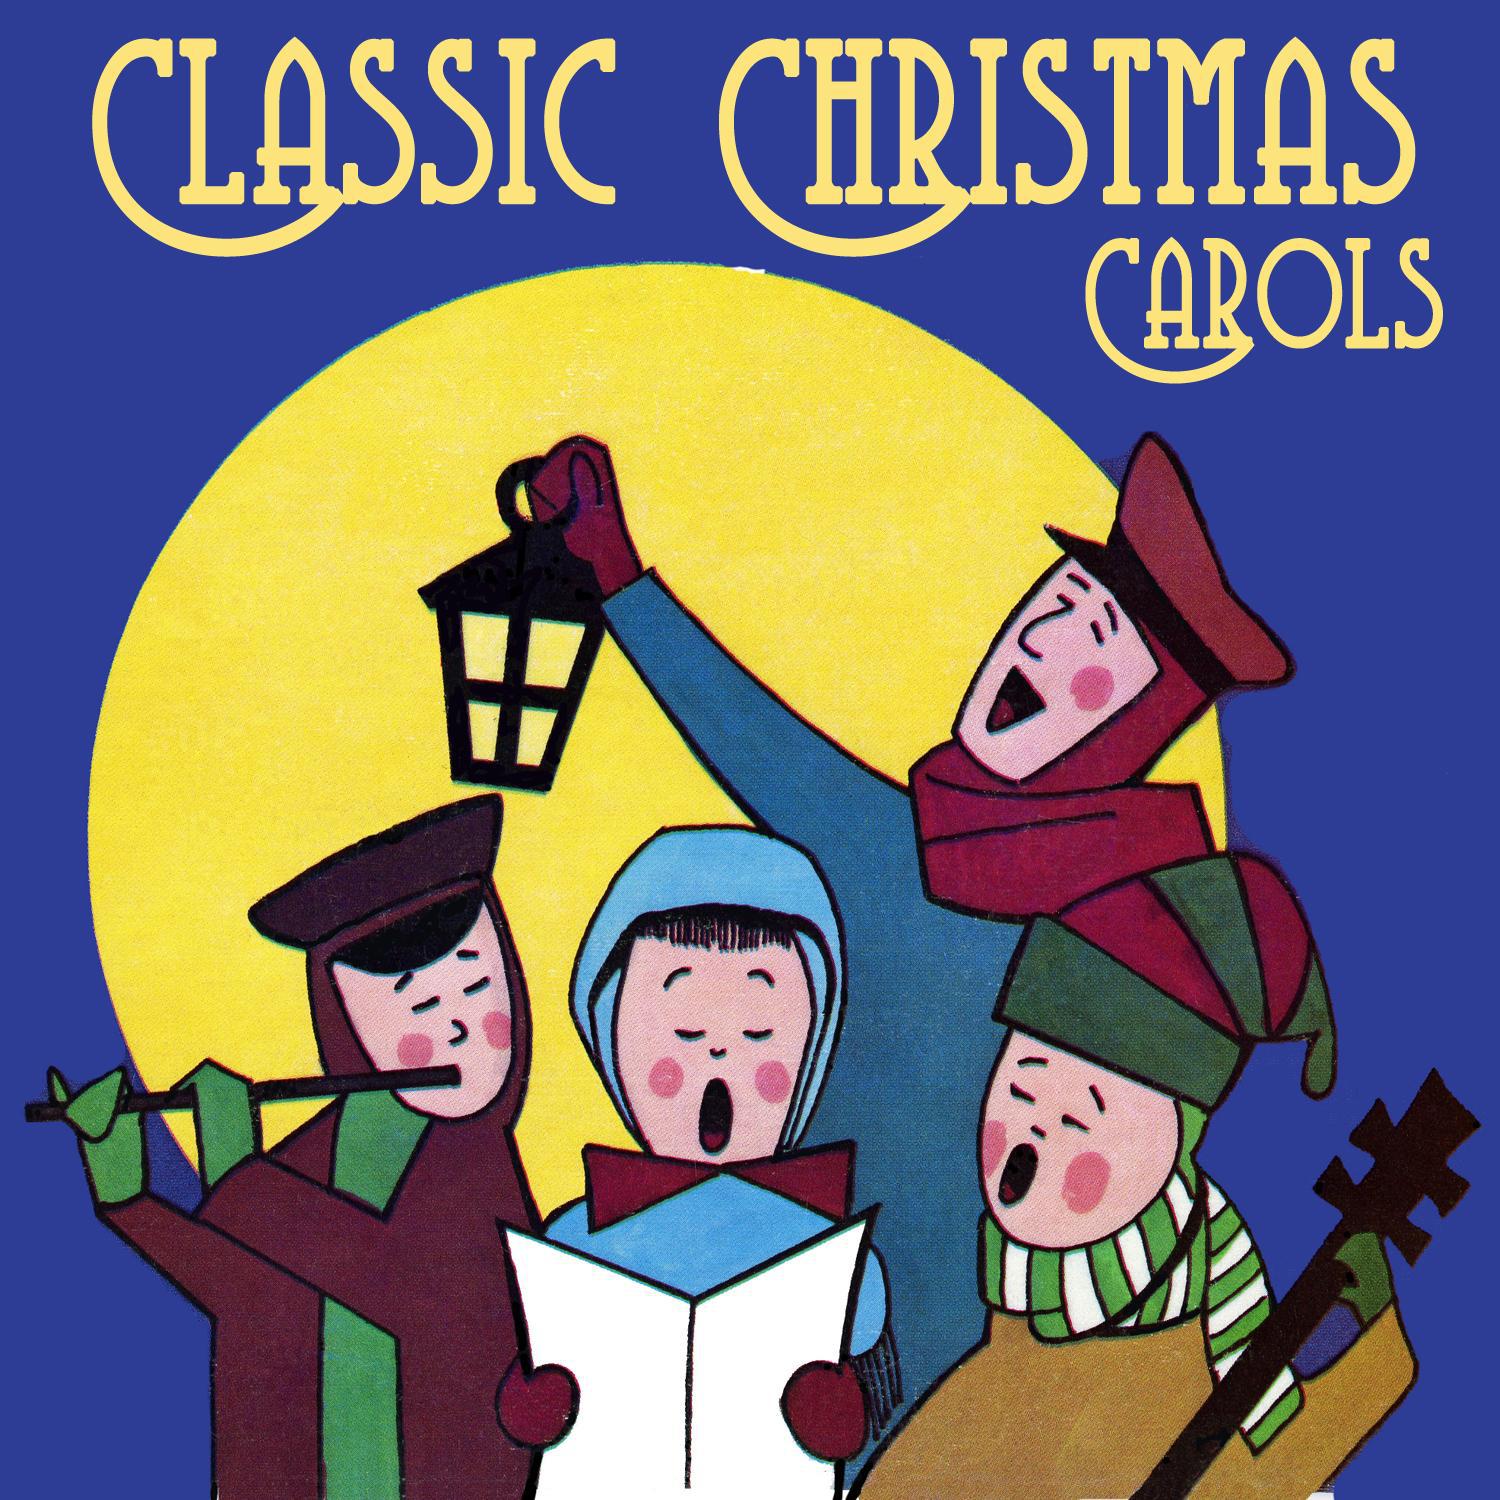 The Merry Christmas Polka